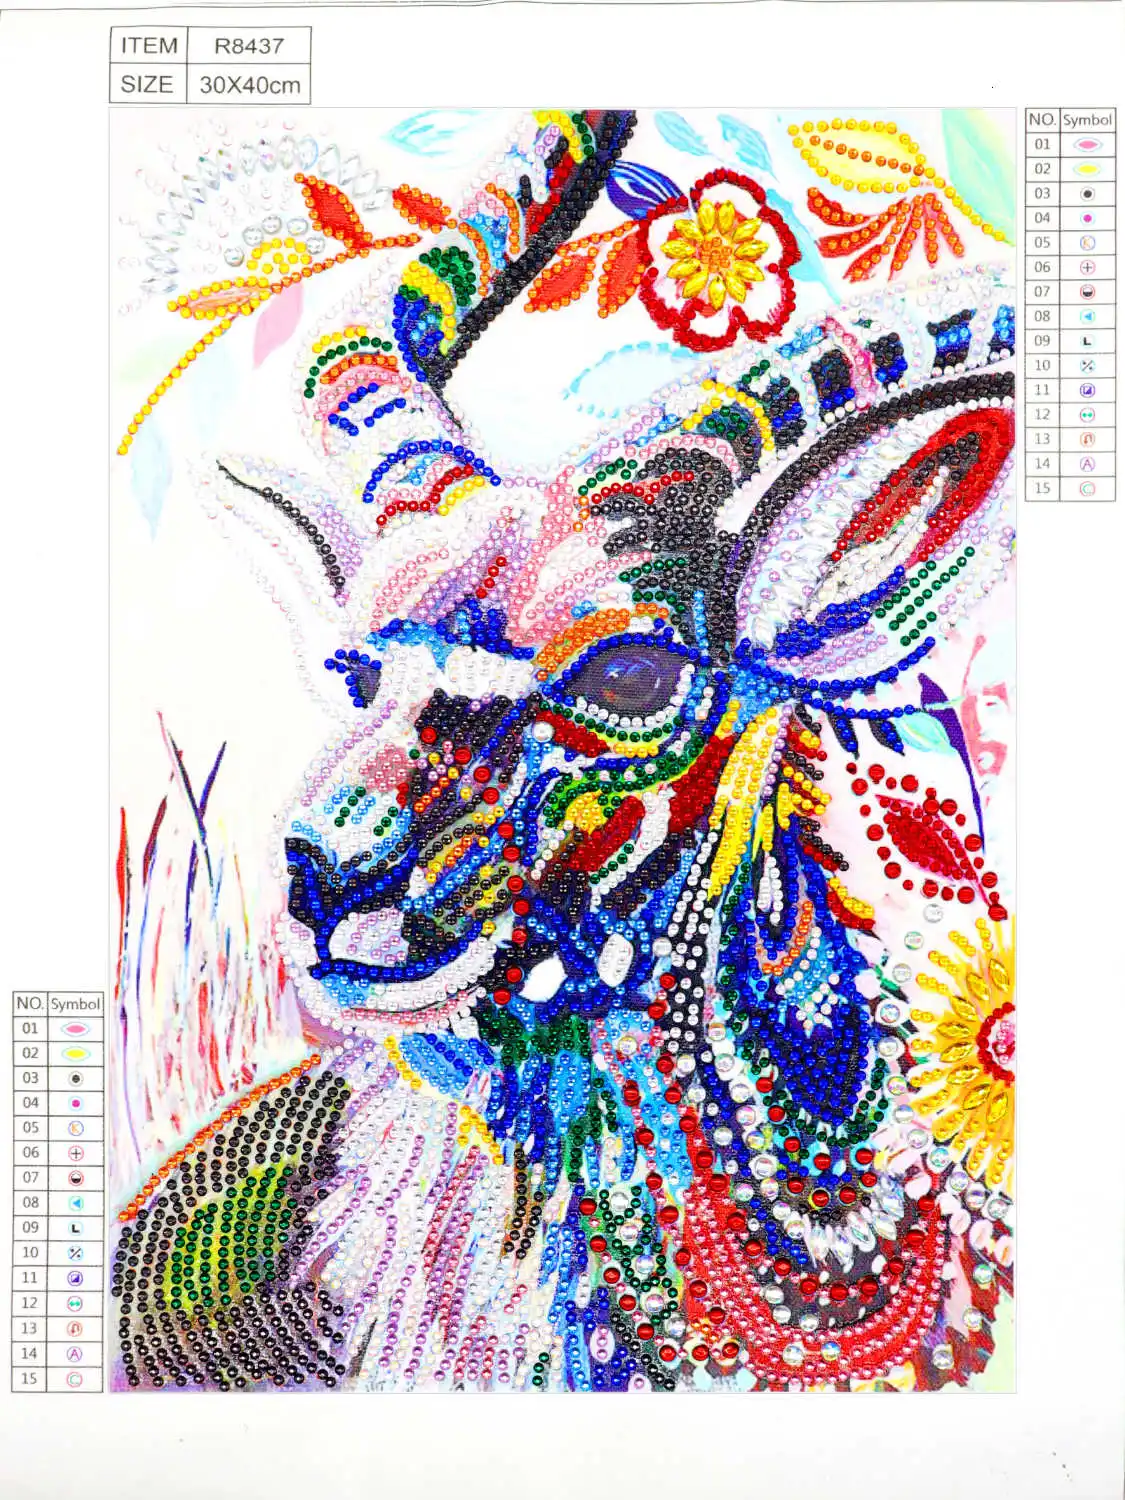 AZQSD Алмазная картина животные Стразы особой формы Алмазная вышивка мозаика собака ручной работы подарок DIY 24x34 см - Цвет: R8437